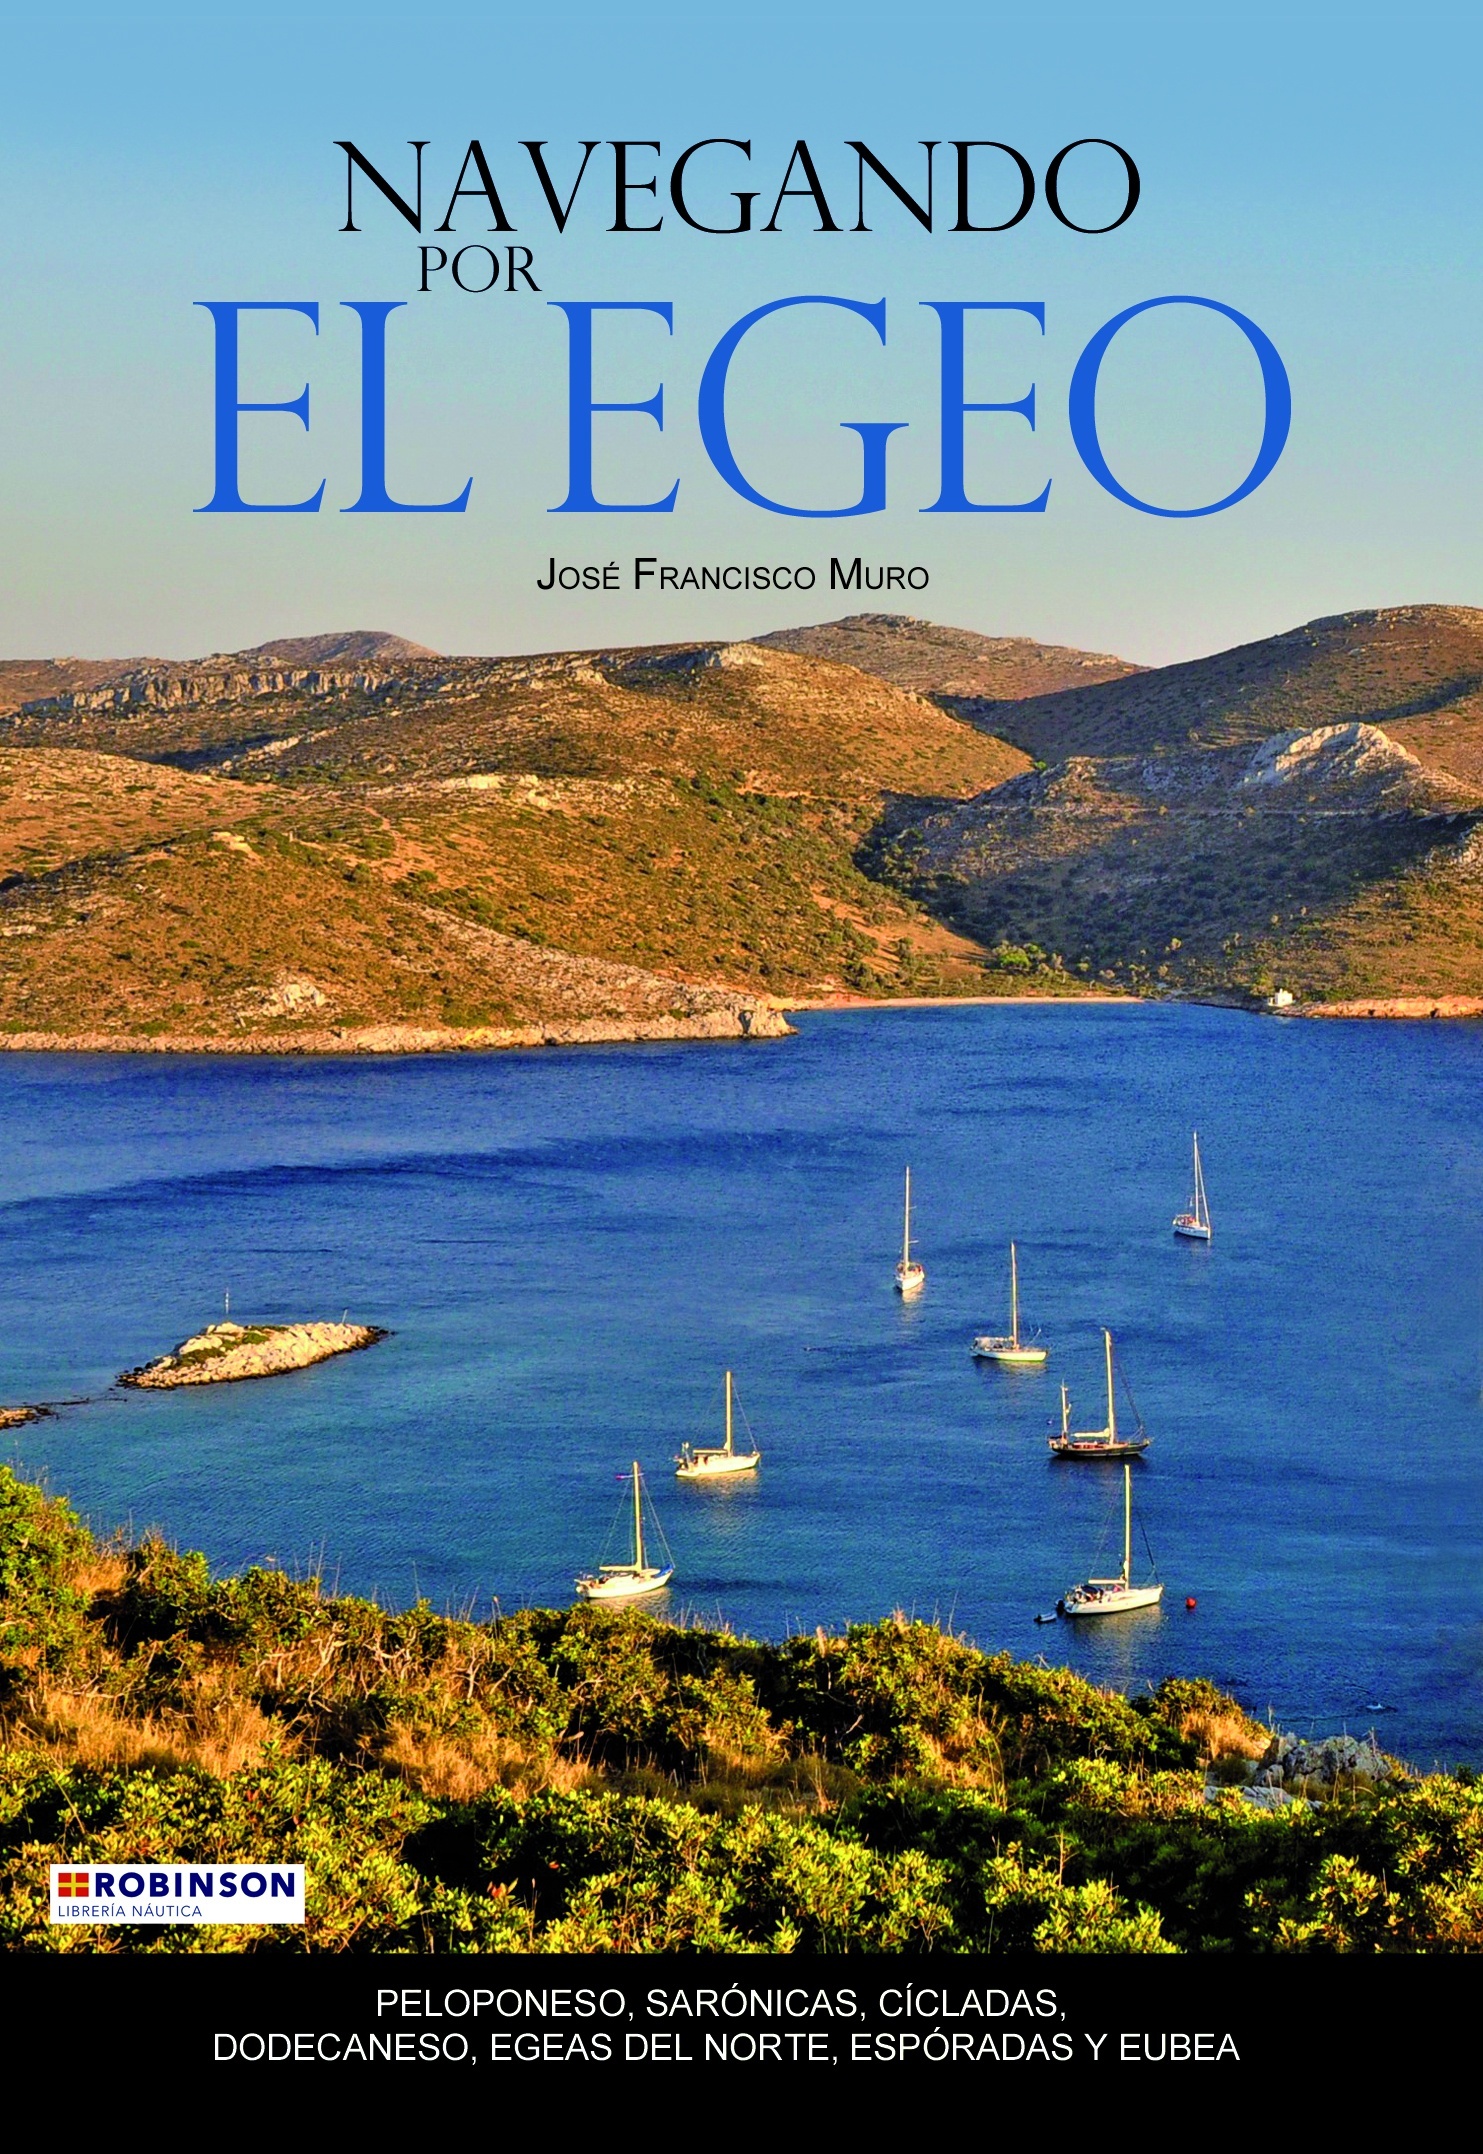 Navegando por el Egeo "Peloponeso, Sarónicas, Cícladas, Dodecaneso, Egeas del norte, Espóradas y Eubea"